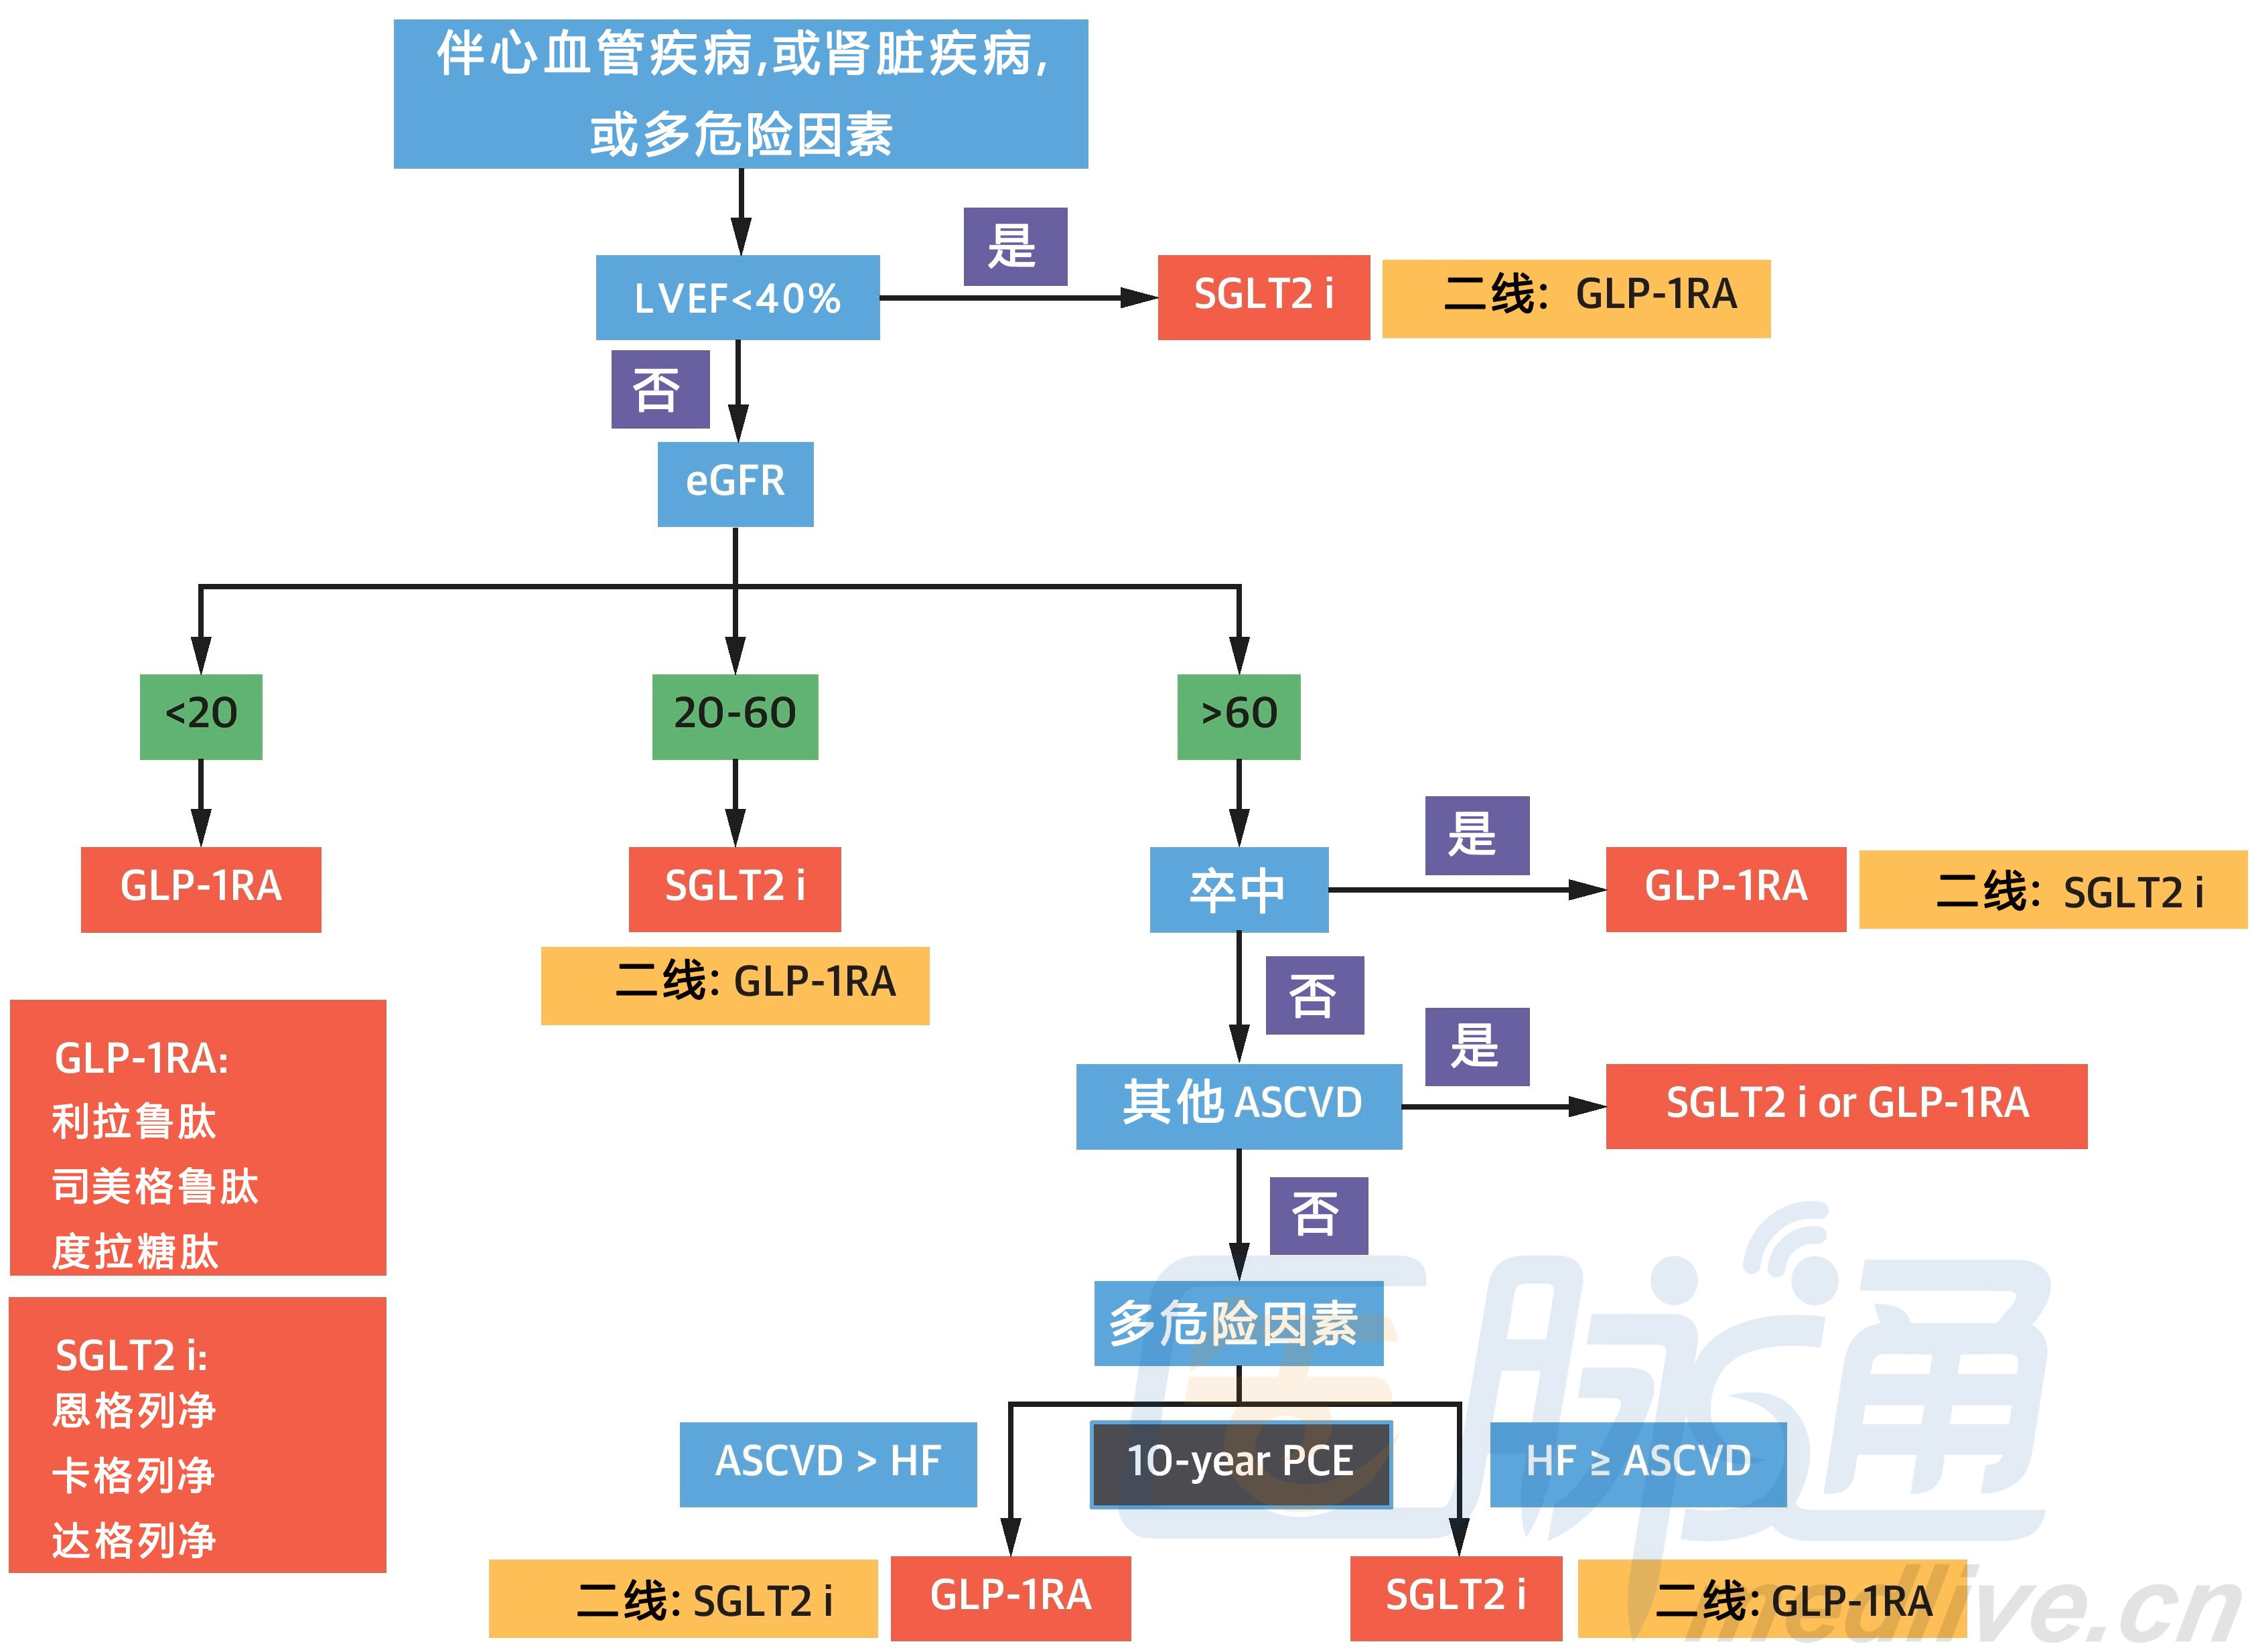 台湾省发布2型糖尿病新药治疗路径图二甲双胍那我走